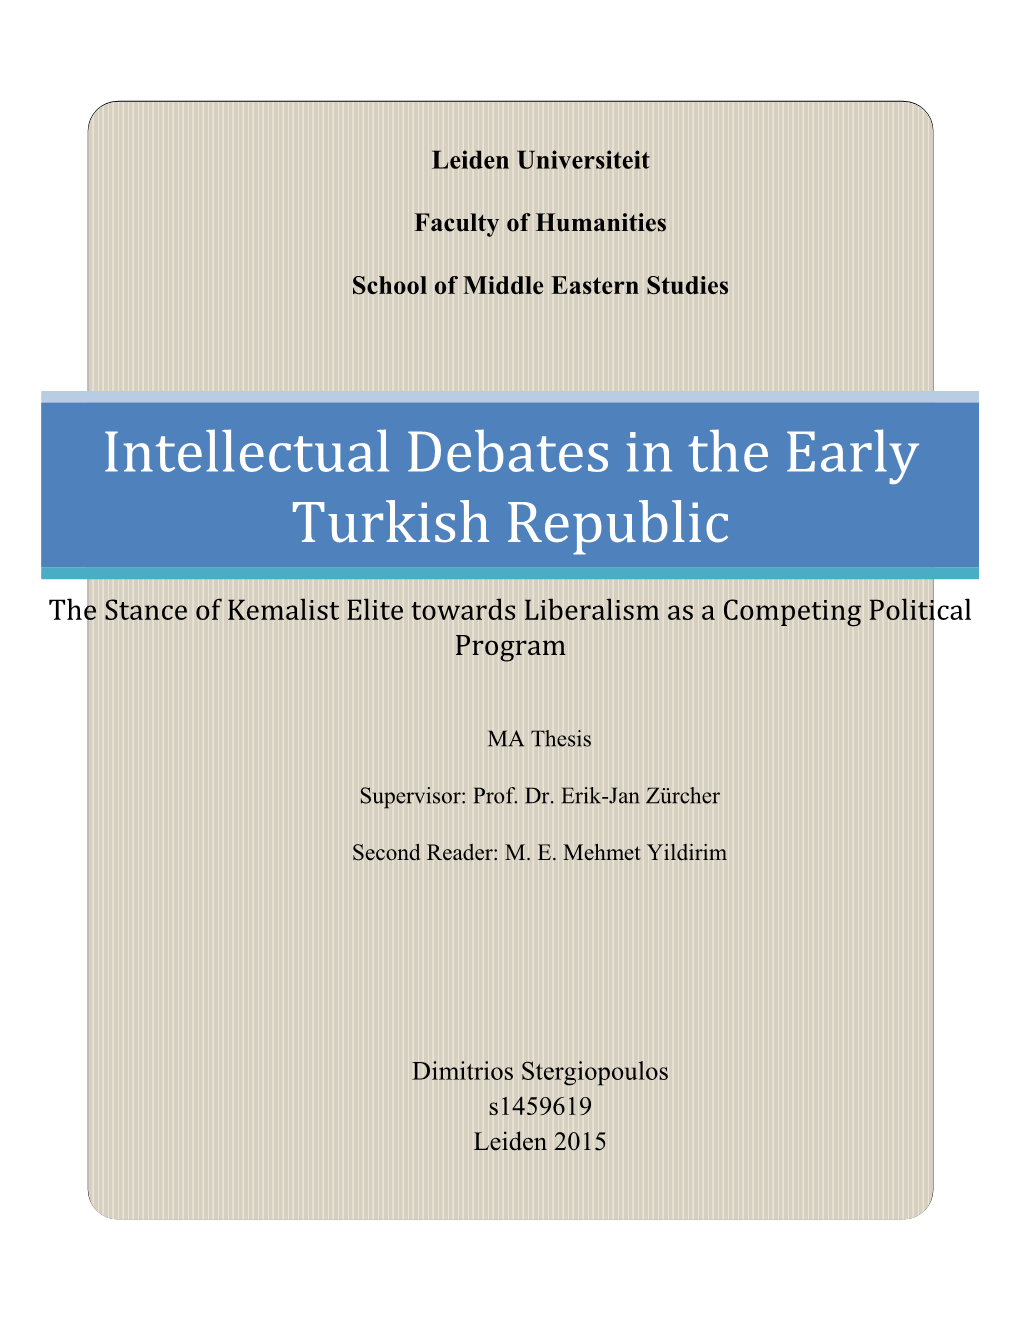 Intellectual Debates in the Early Turkish Republic